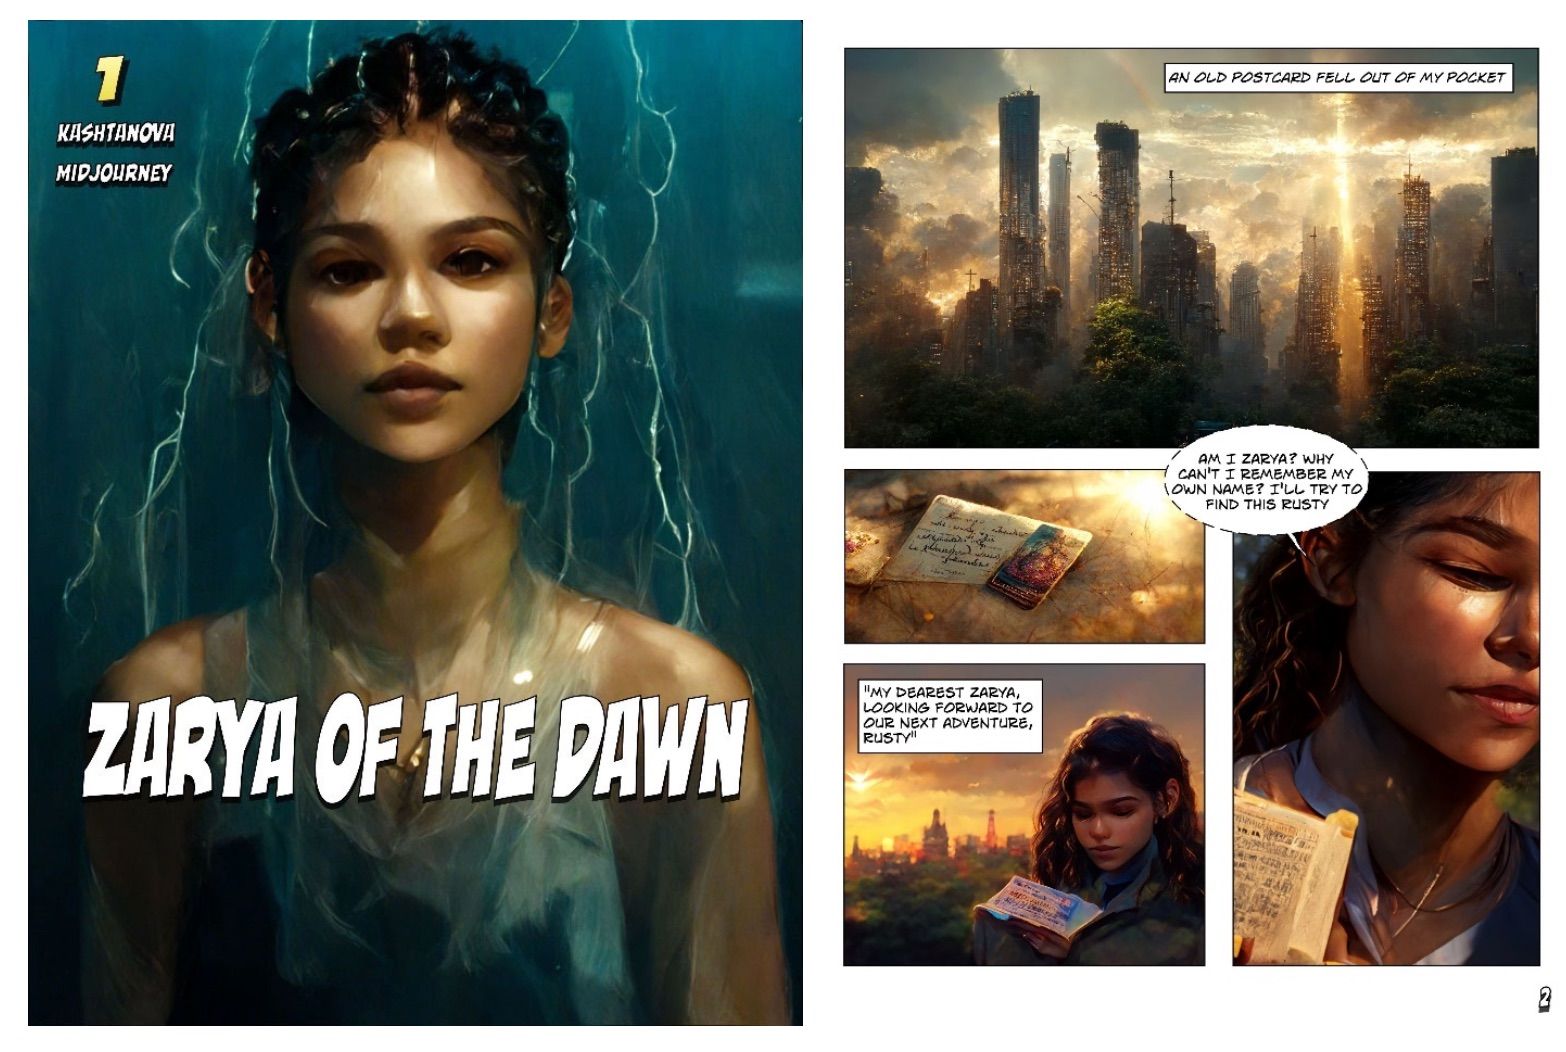 Zarya of the Dawn - AI Art in a Comic Book